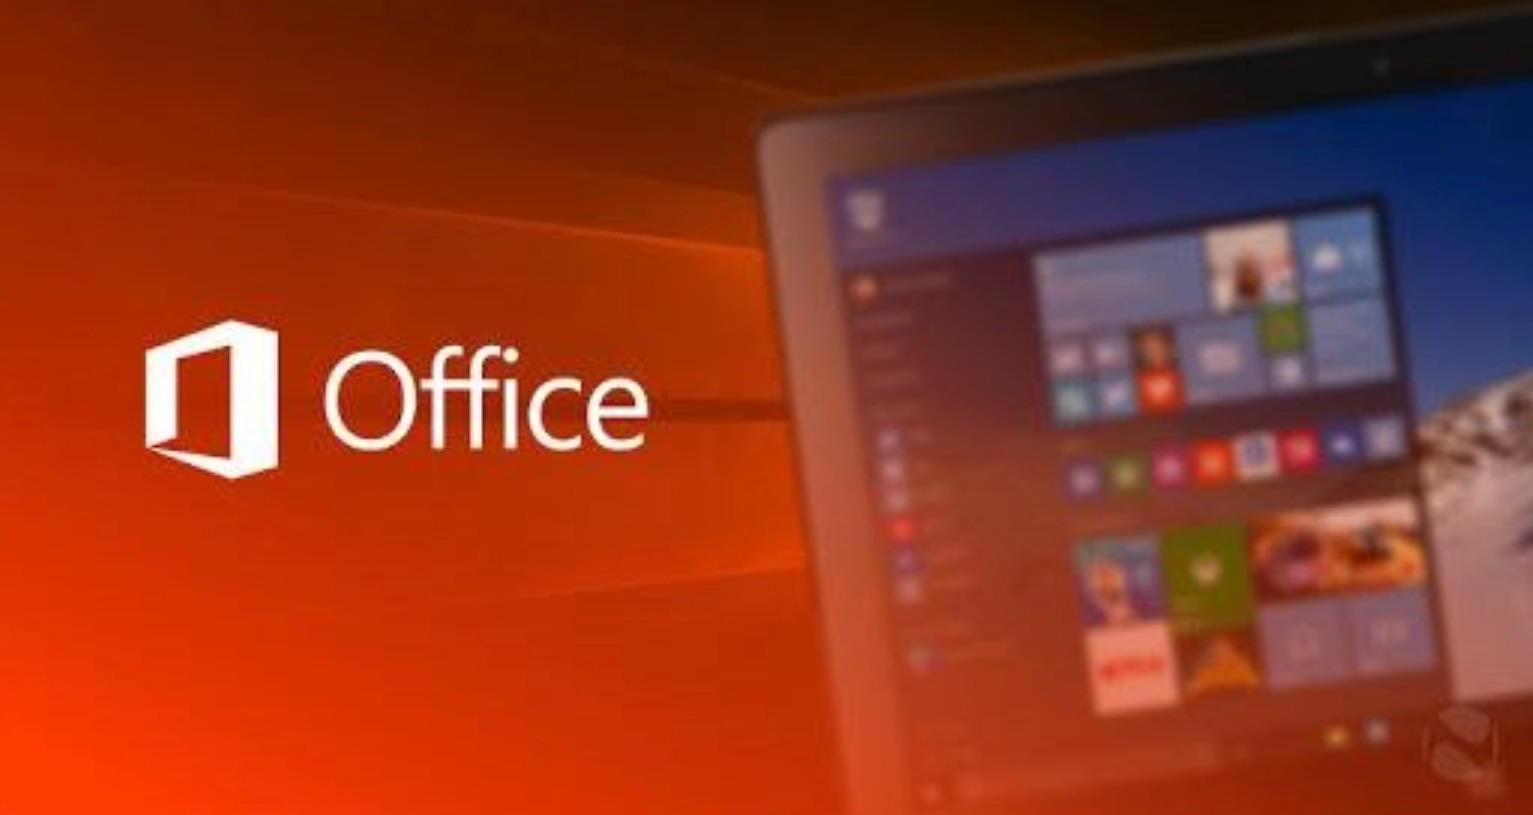 Solo 6 € Windows 10, solo 15 € Office: imperdibili offerte Microsoft su GoDeal24.com